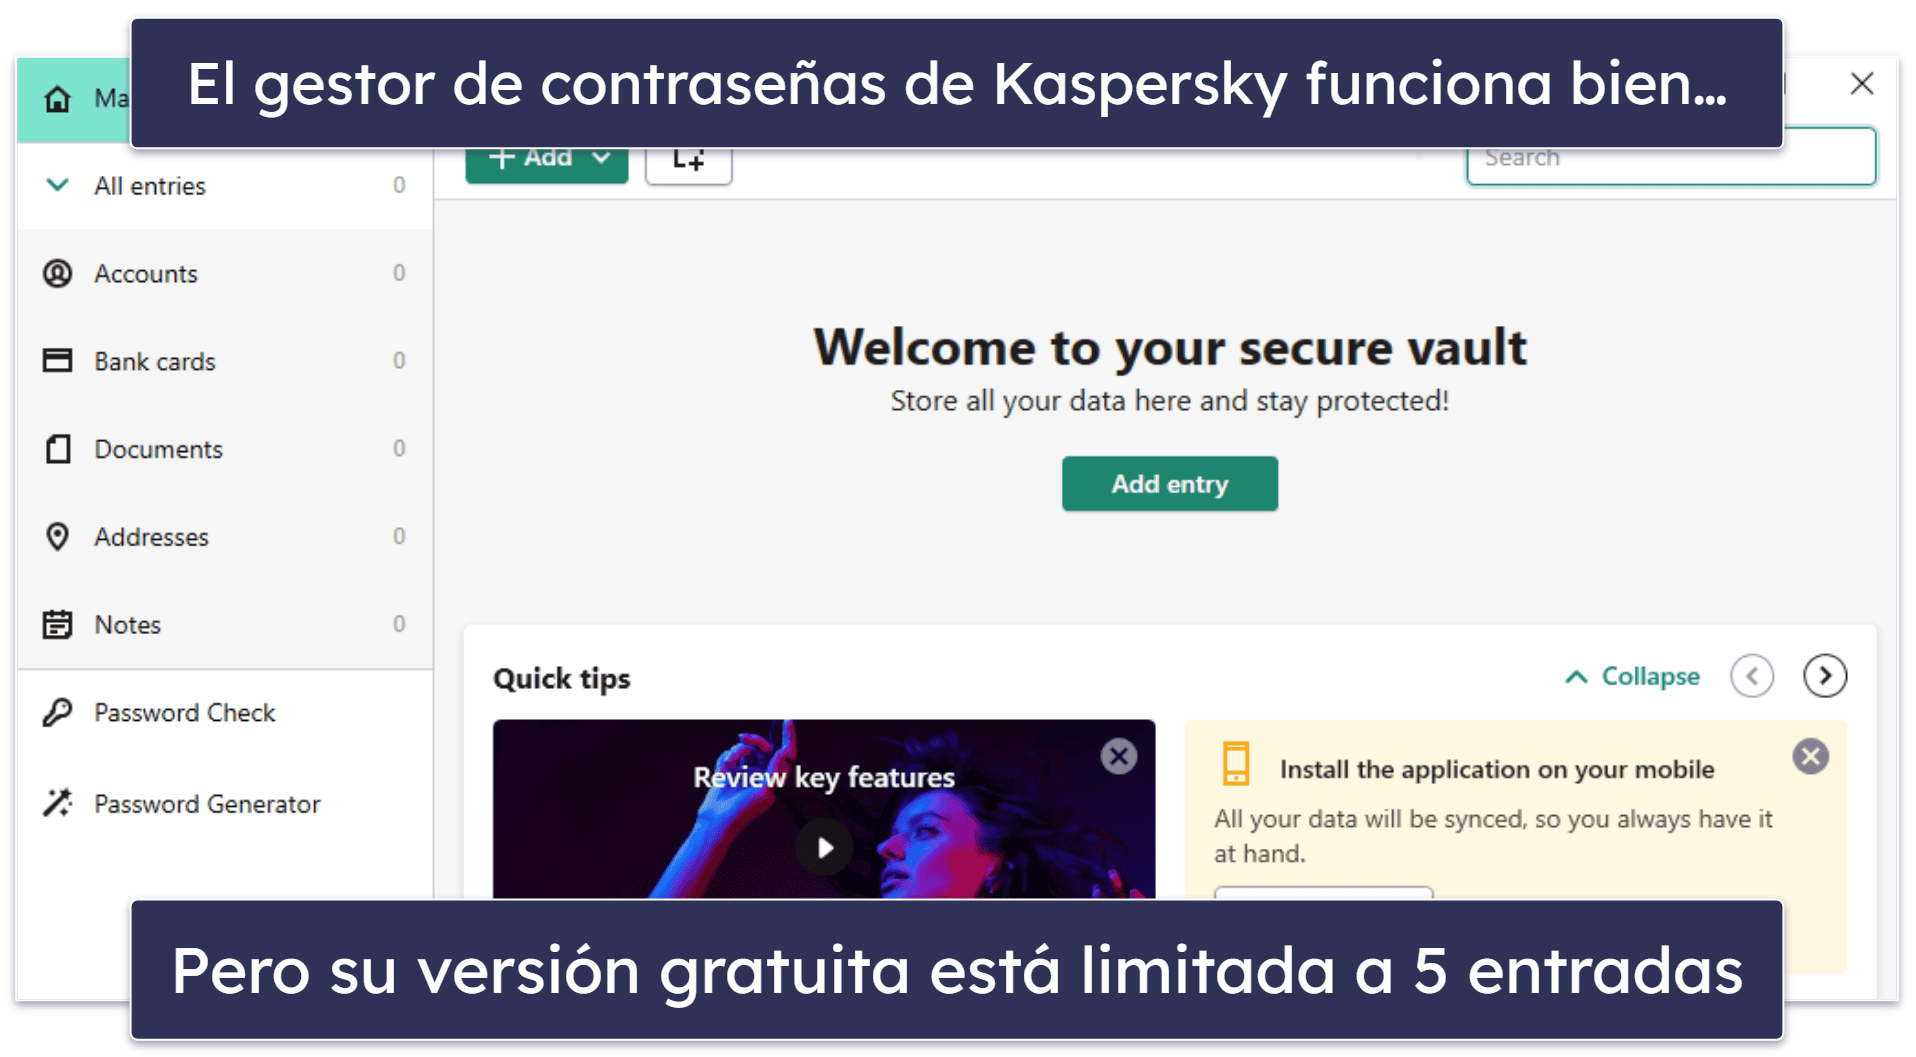 6. Kaspersky Free: buena gama de funciones gratuitas